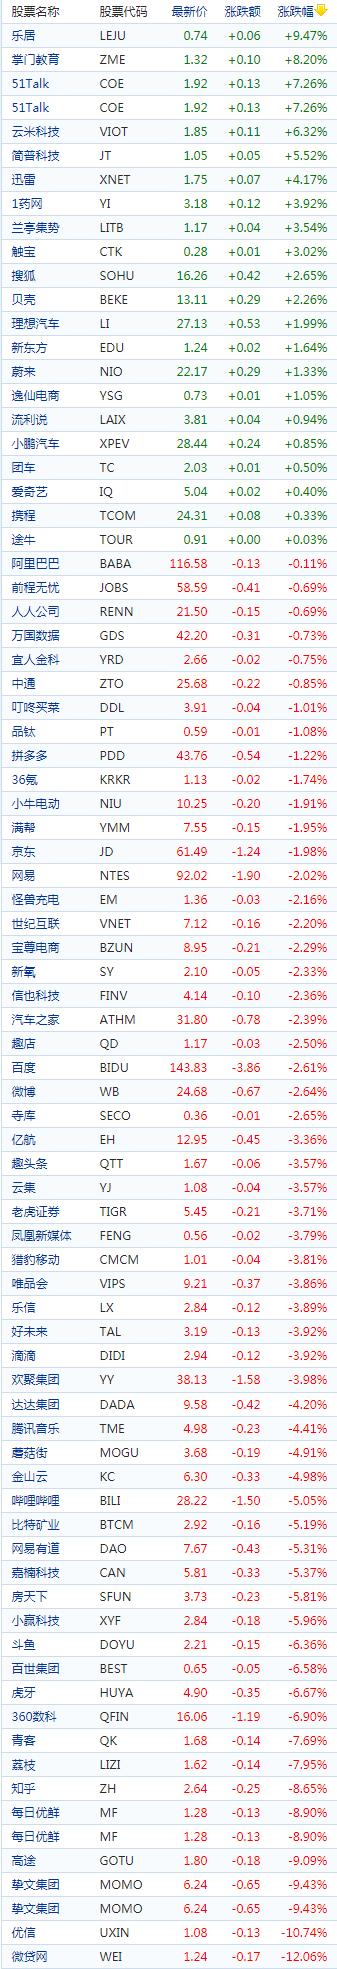 中国概念股周三收盘多数下跌直播概念股走低优信跌超10%